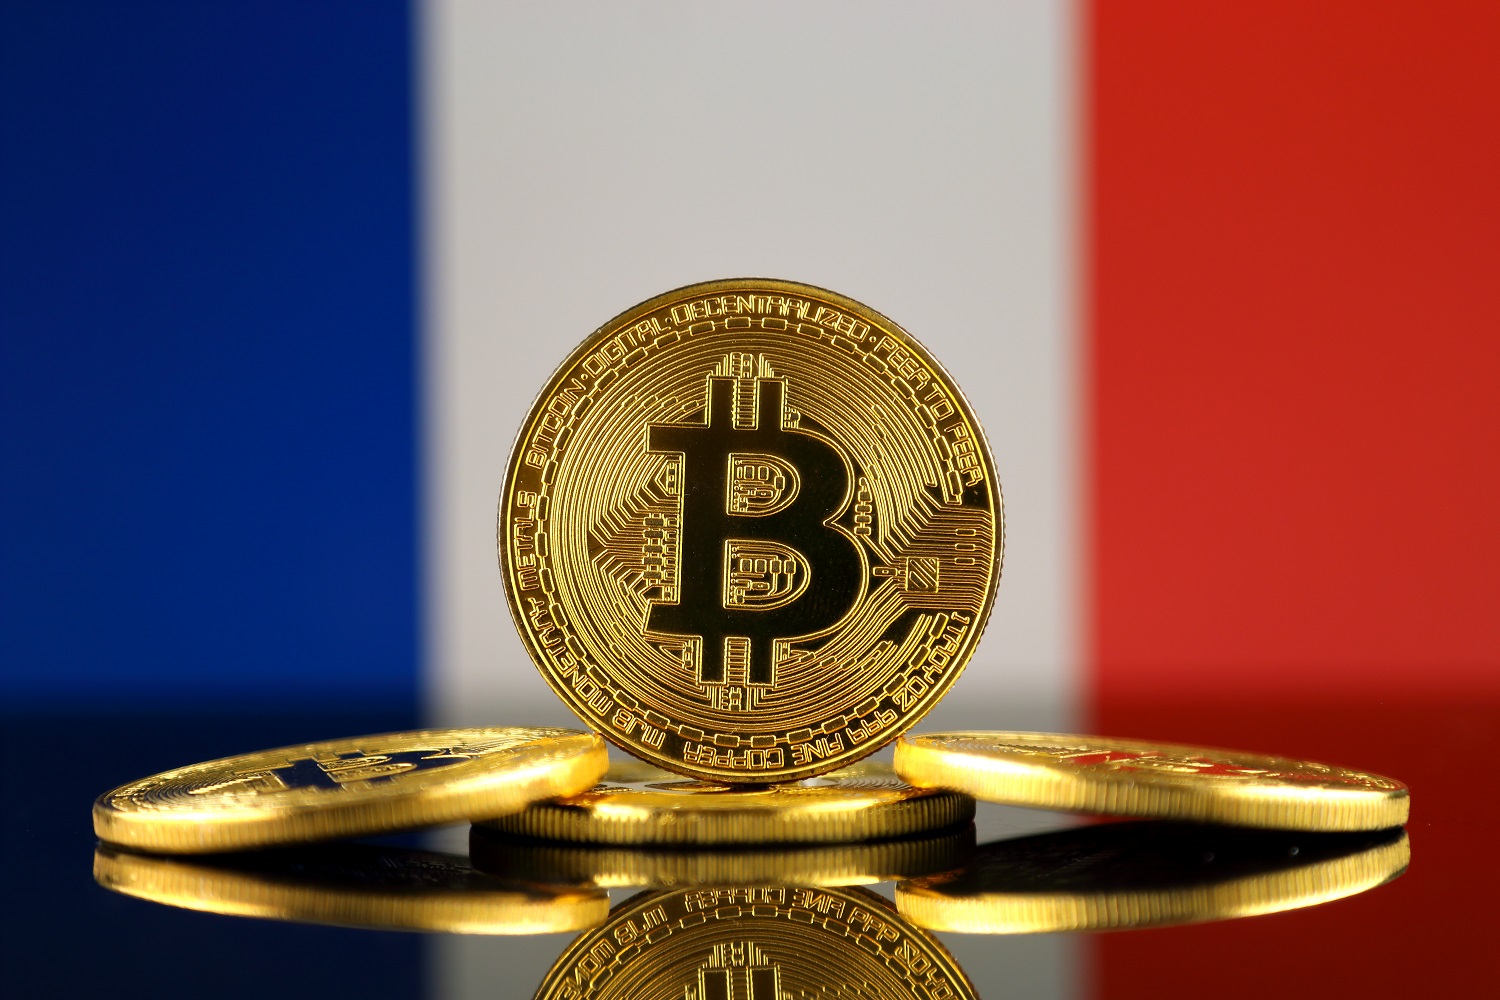 Einer von 10 Franzosen besitzt Kryptowährungen, so eine Studie - nimmt die Akzeptanz zu?